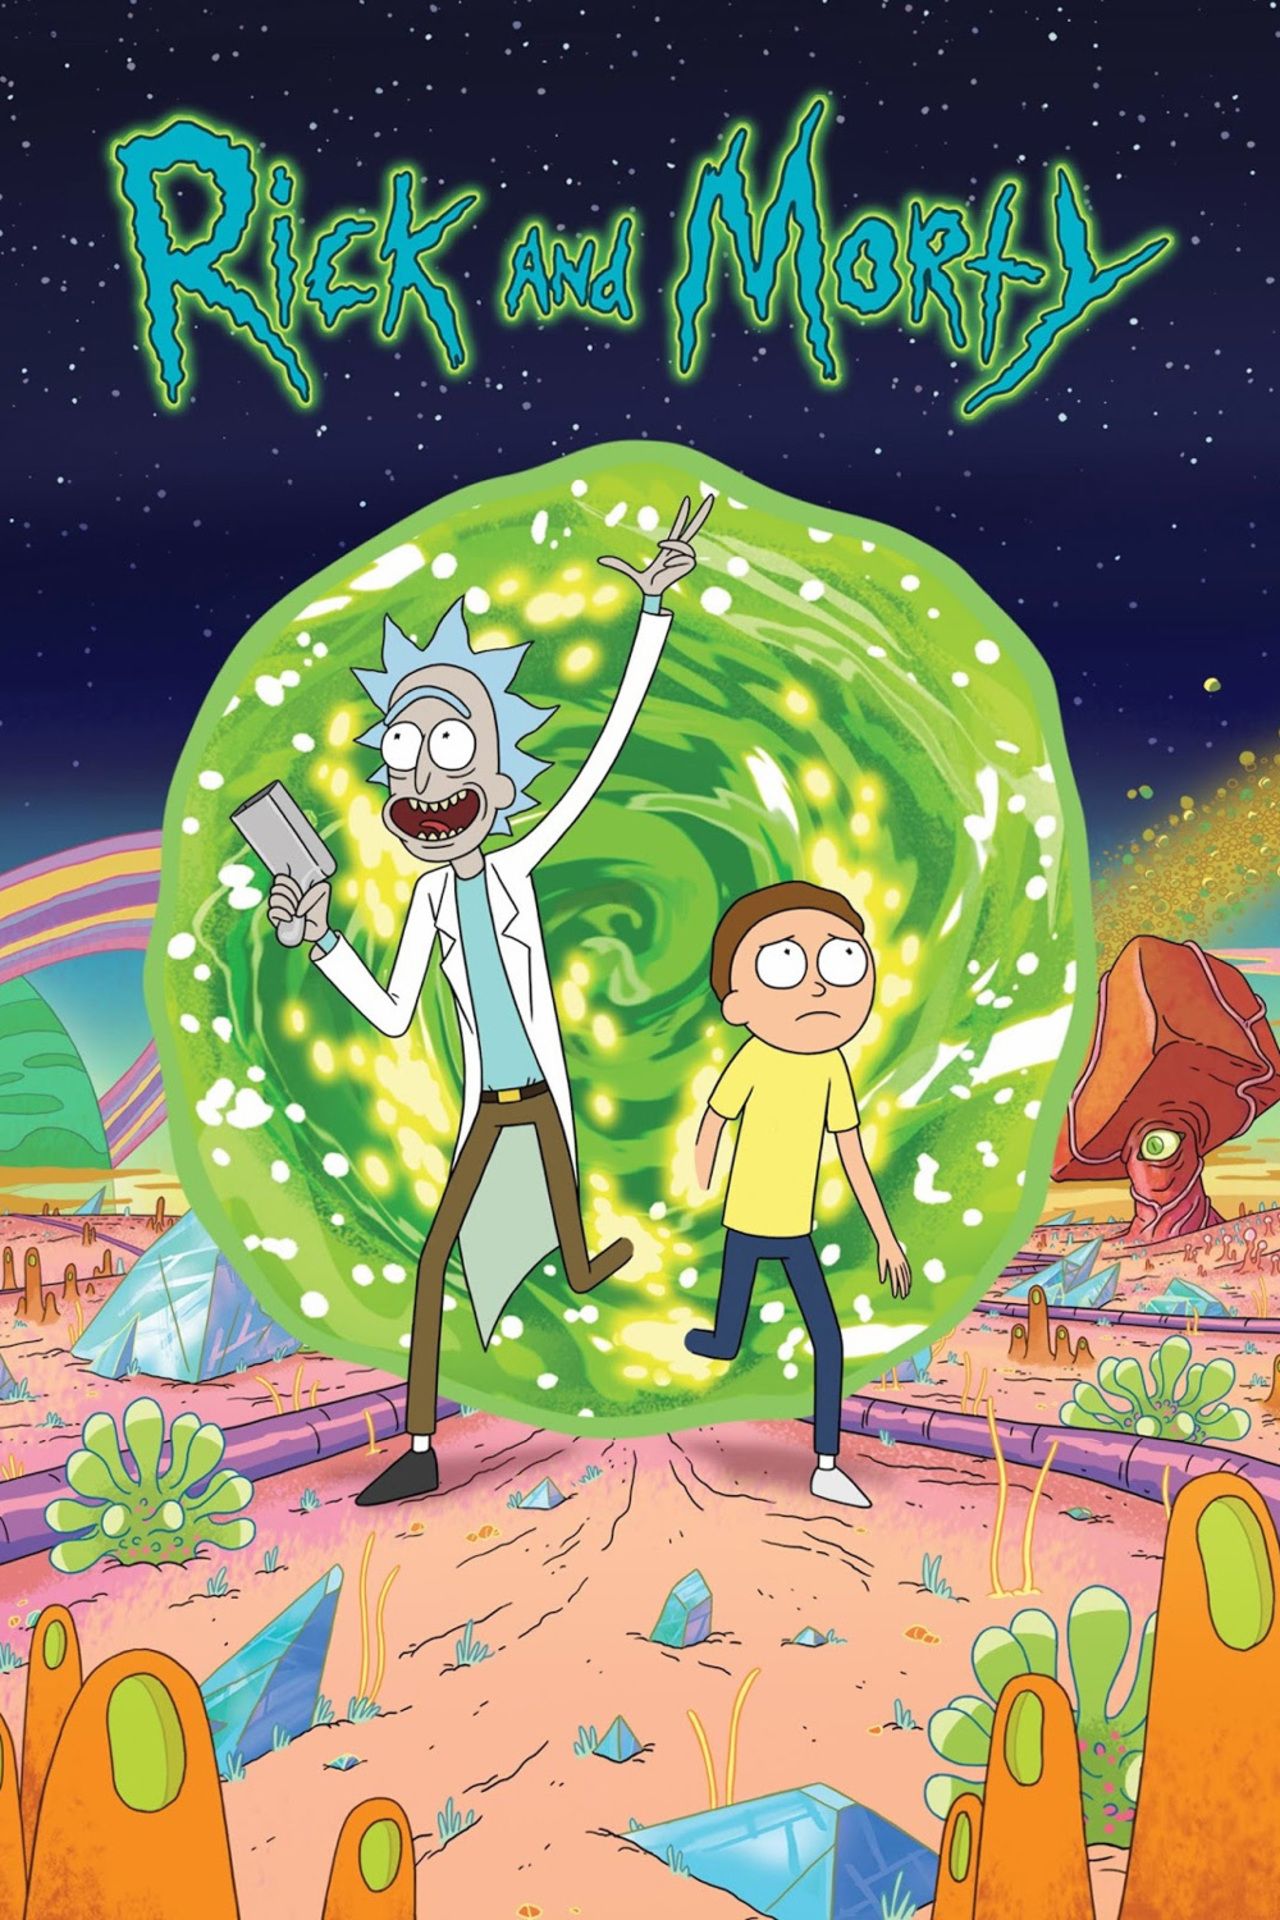 Rick and Morty (TV Series 2013– ) - IMDb